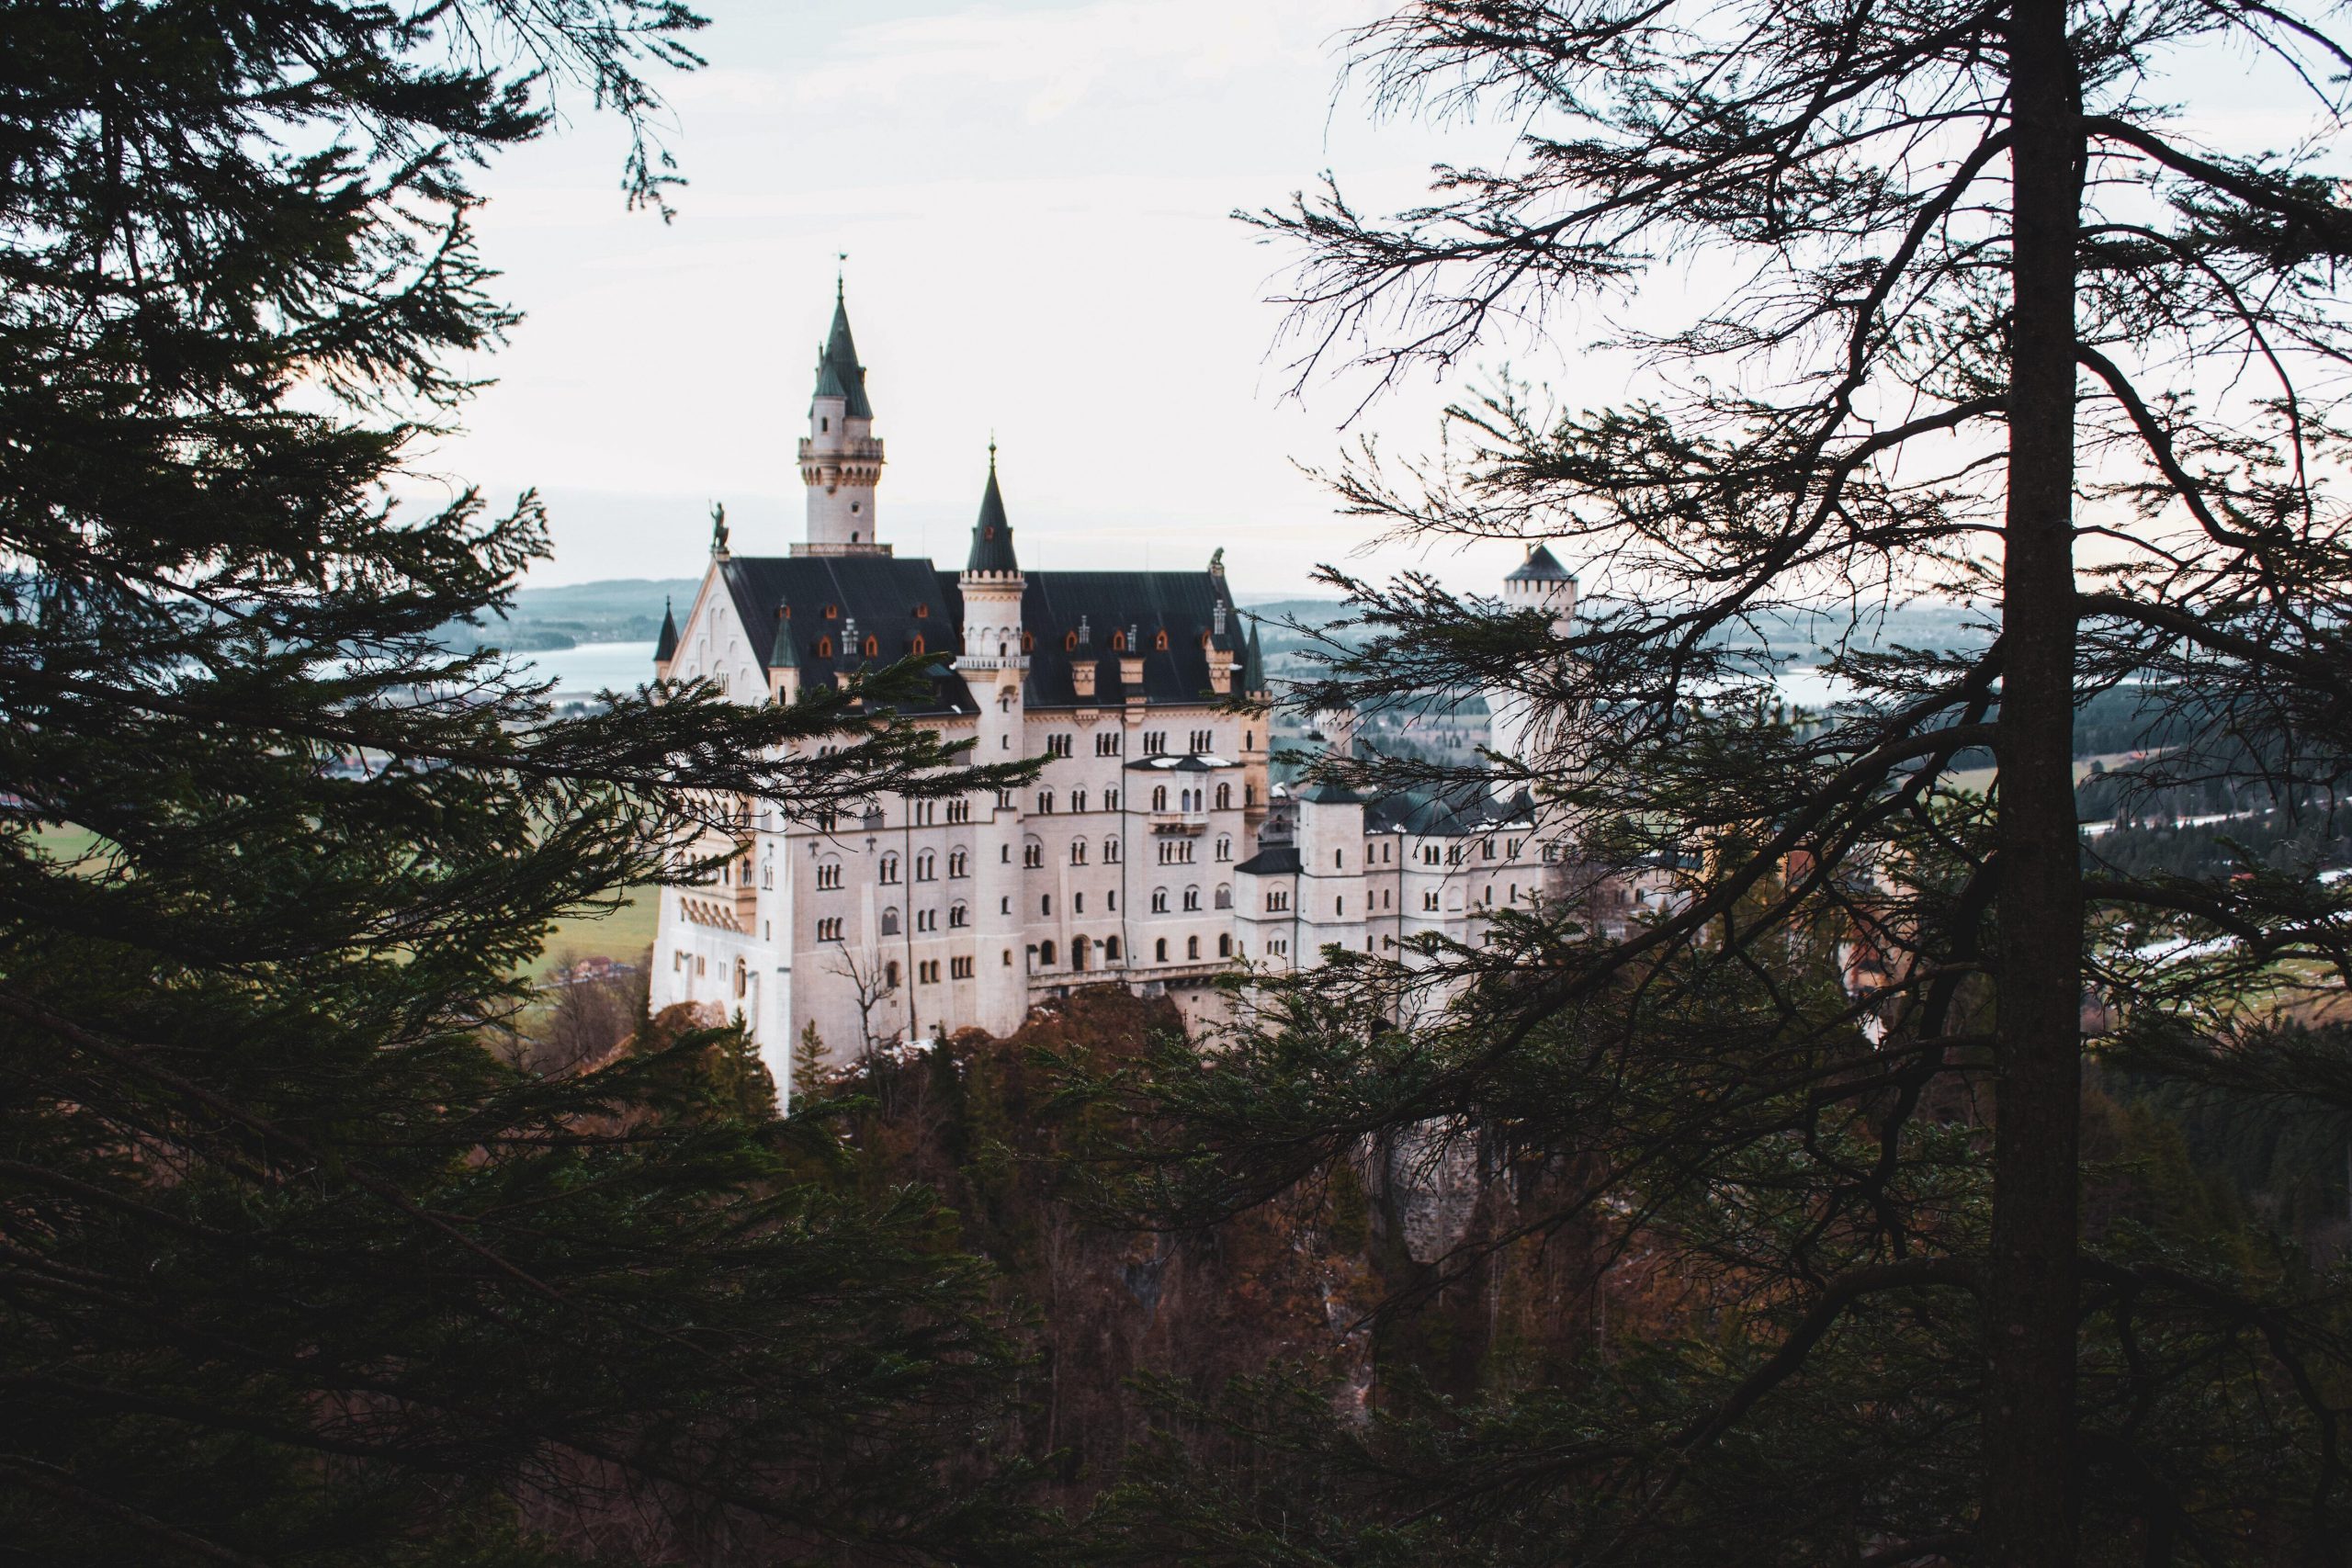 A beautiful castle in Germany